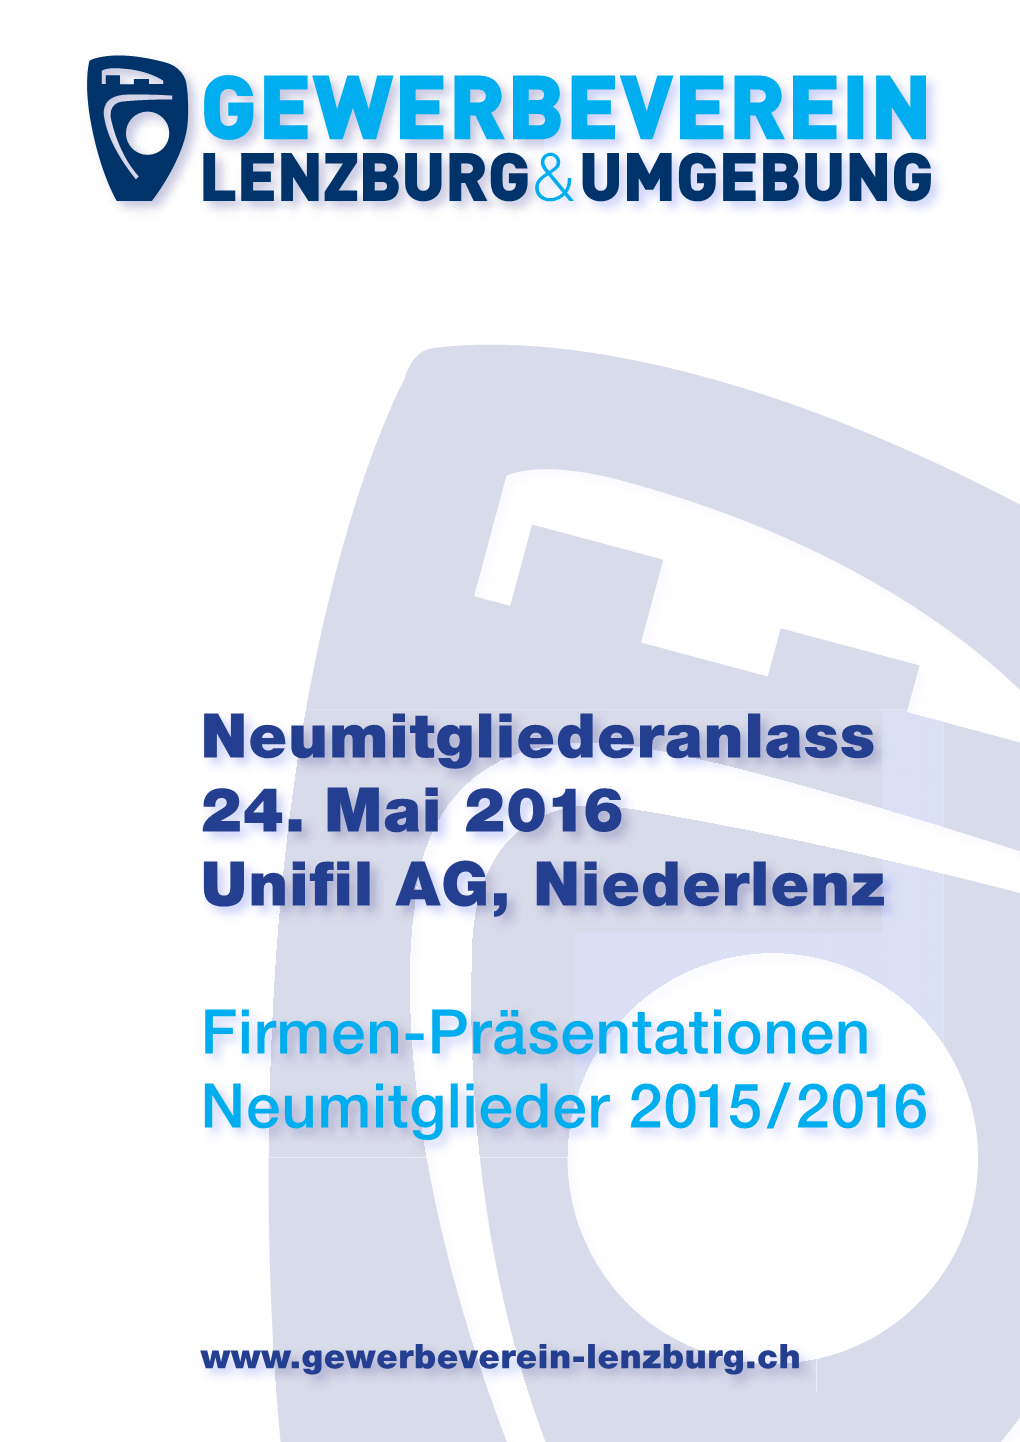 Neumitgliederanlass 24. Mai 2016 Unifil AG, Niederlenz Firmen